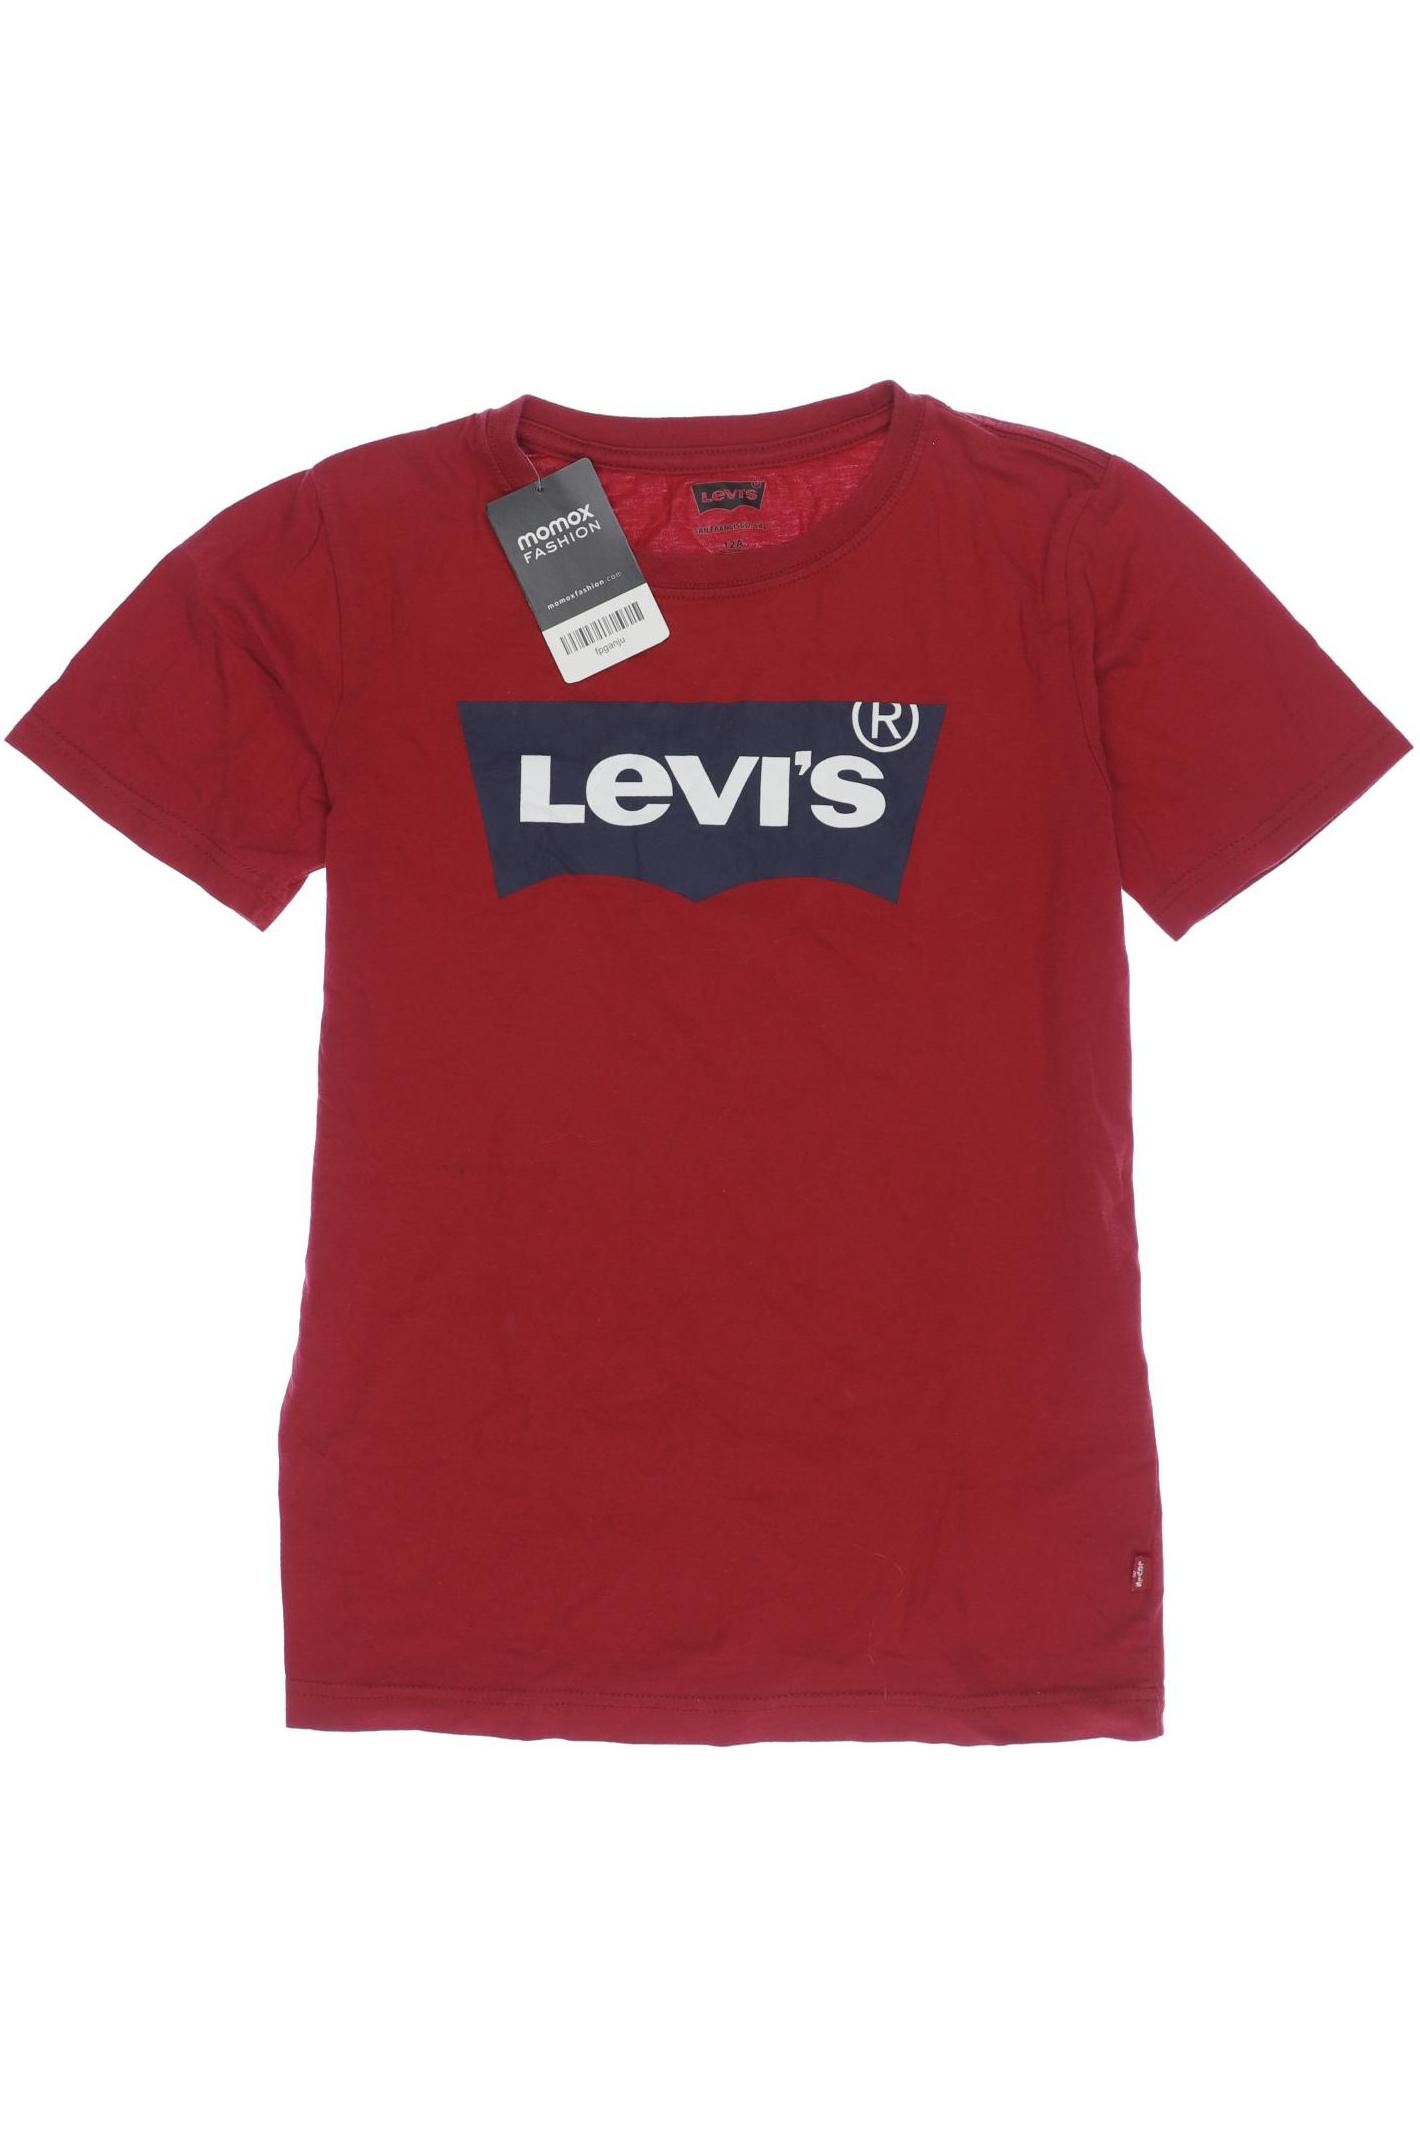 Levis Jungen T-Shirt, rot von Levis